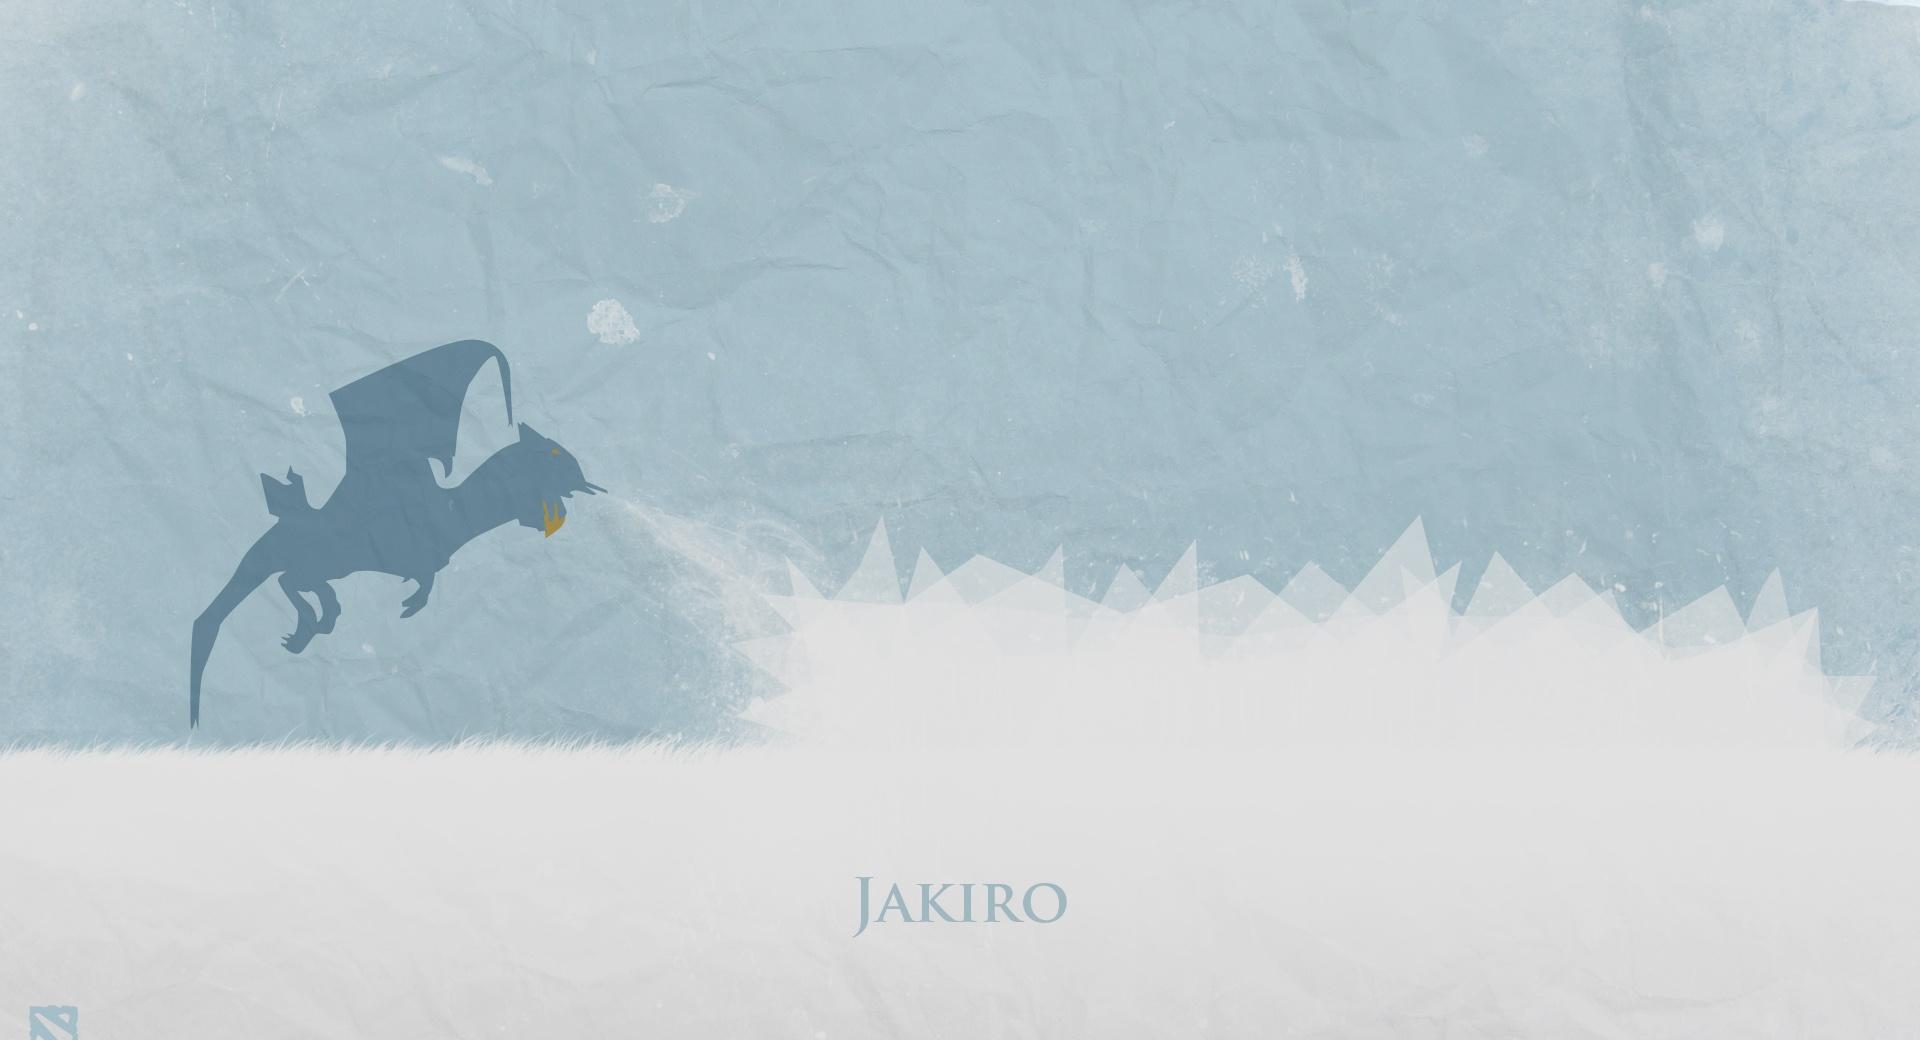 Jakiro - DotA 2 at 1024 x 768 size wallpapers HD quality